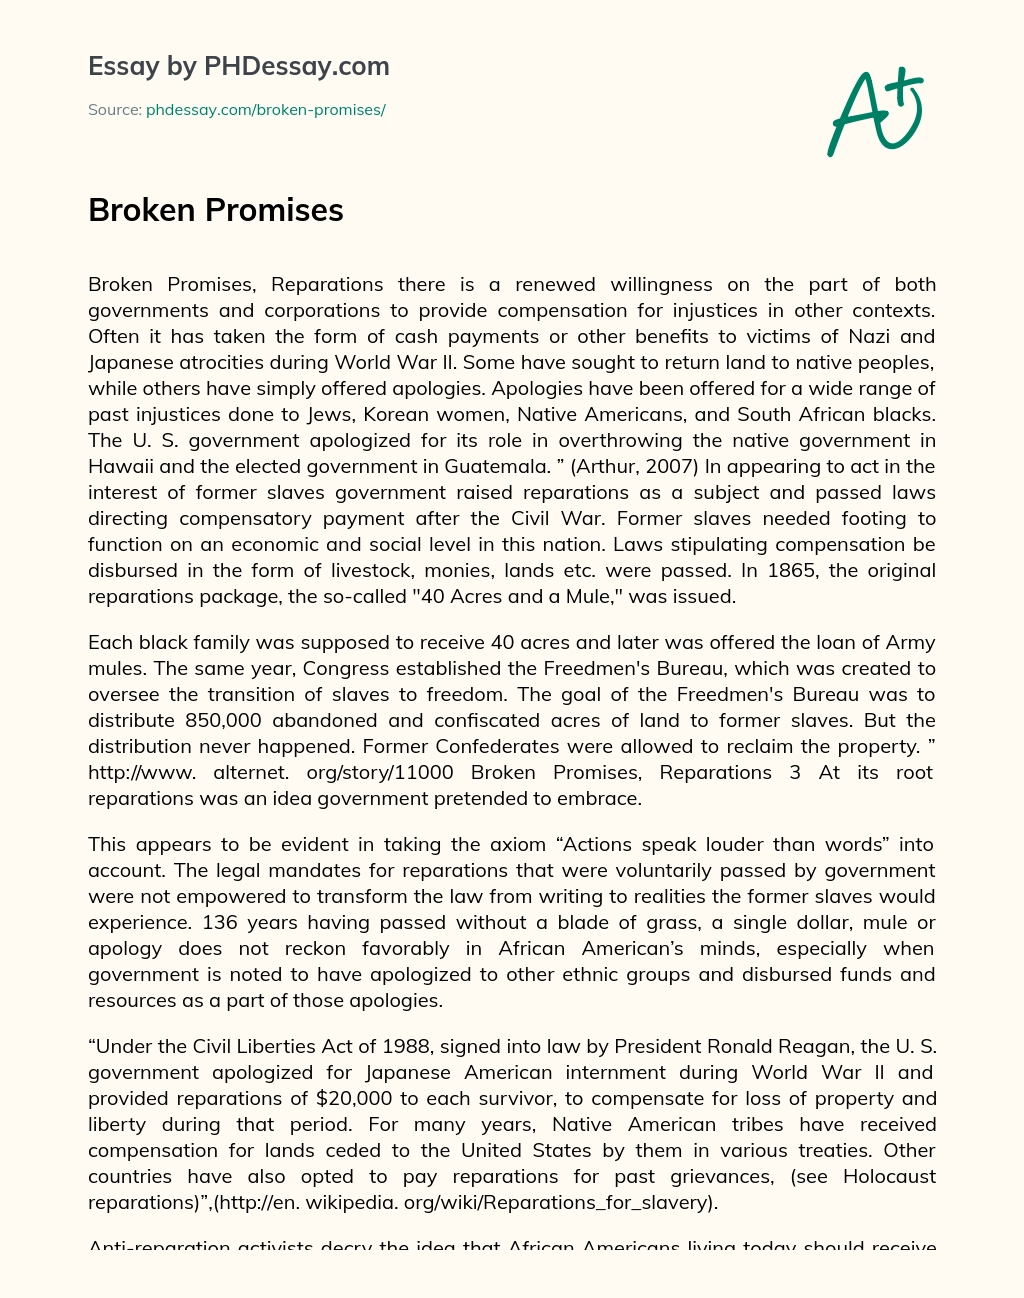 Broken Promises essay